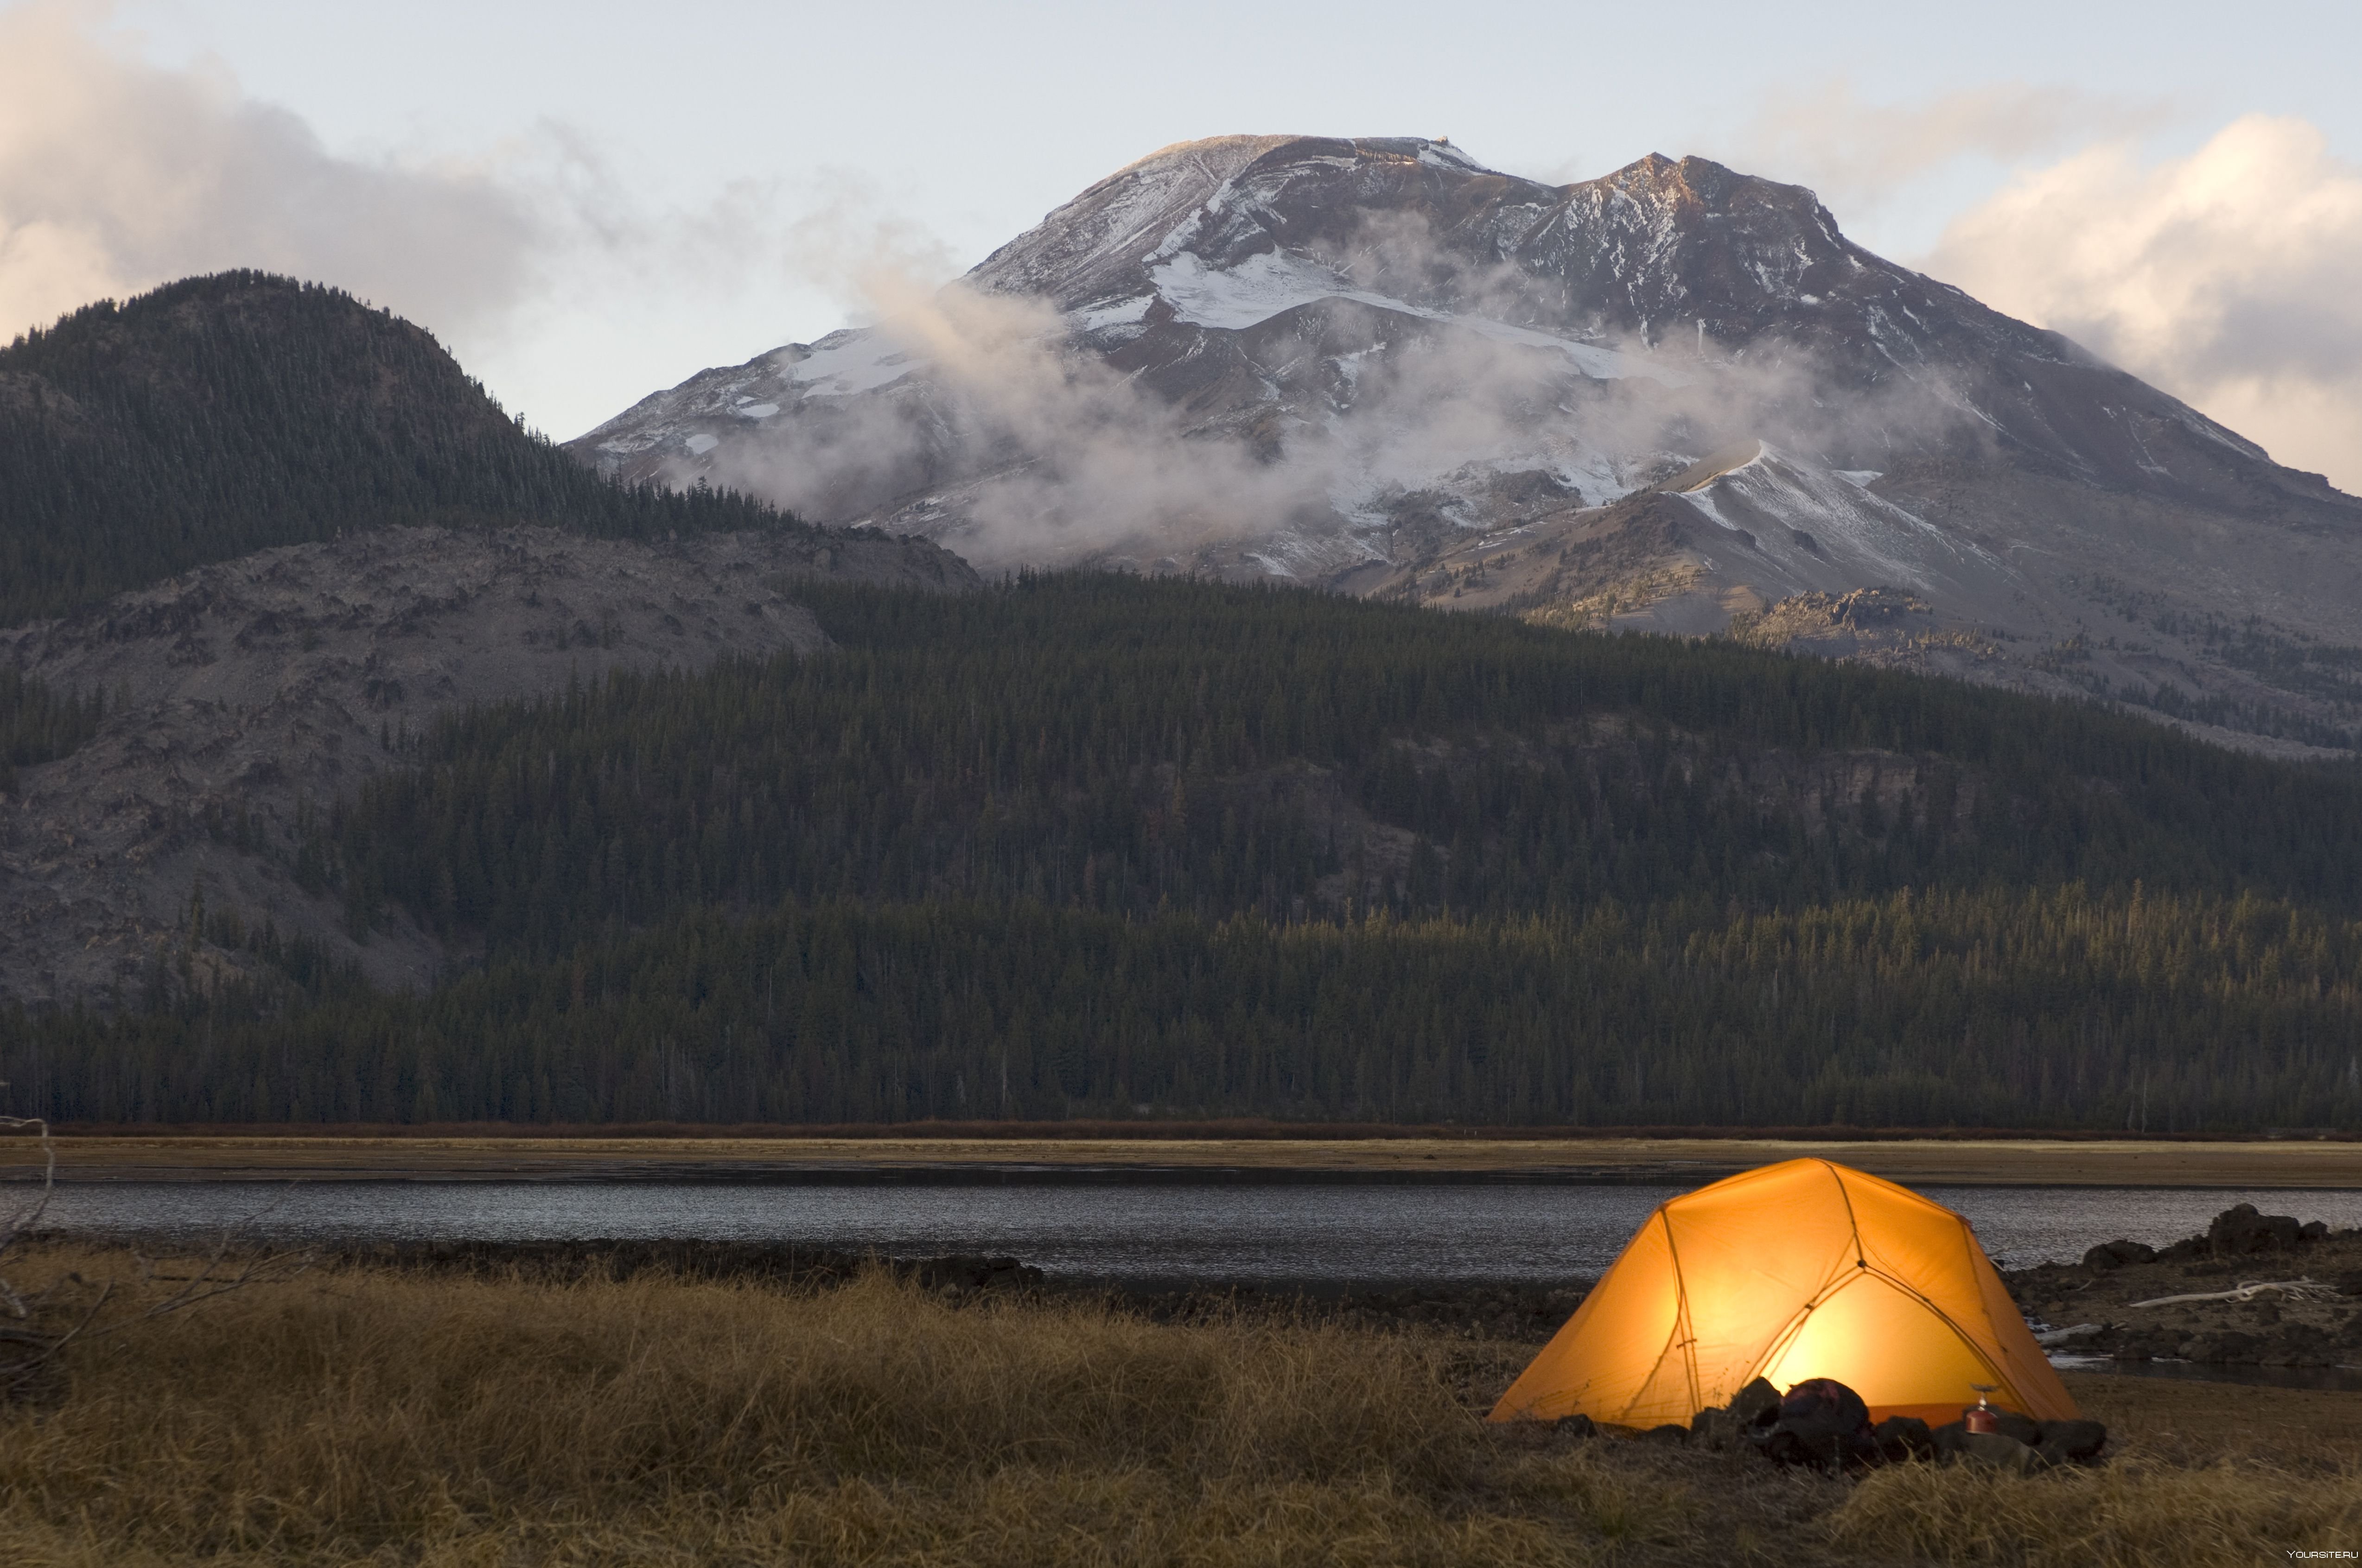 Mountains camping. Красивый вид из палатки. Палатка в горах. Вид из палатки на горы. Палатка на горе.